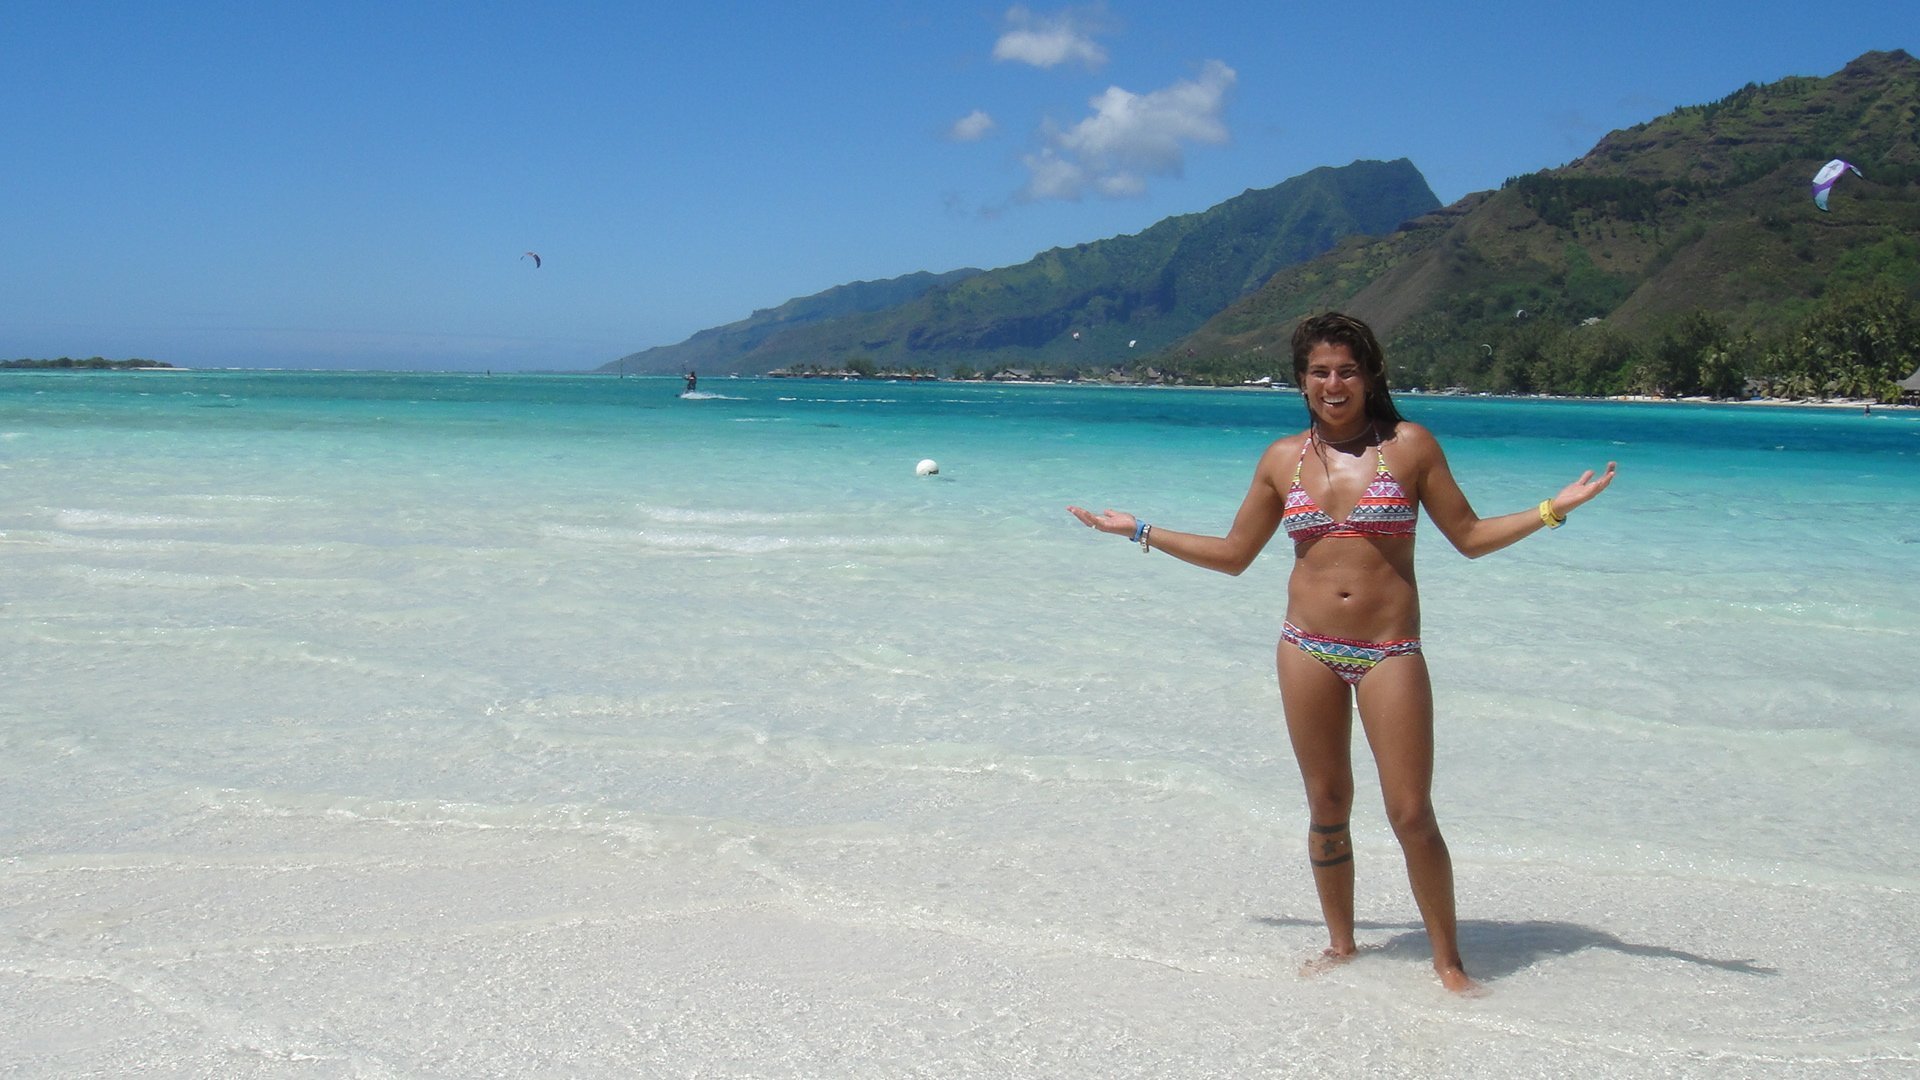 Бесплатное видео дикого пляжа. Дикие пляжи Тайланда. Дикий пляж. Красивые таитянки. Таитянки на пляже.